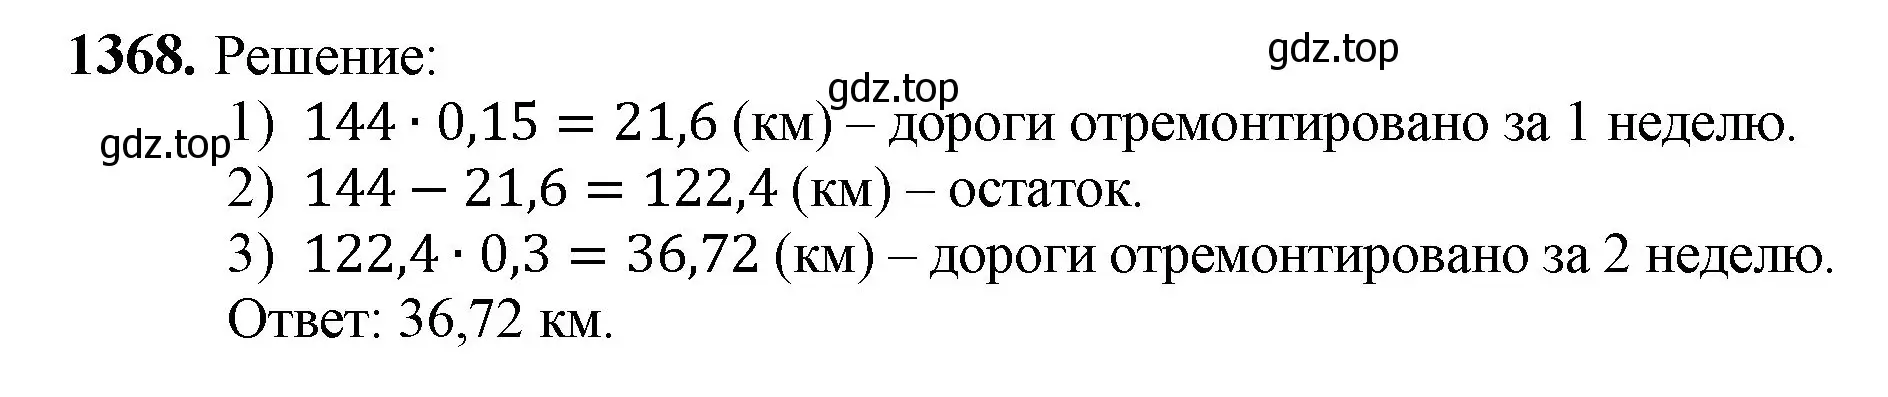 Решение номер 1368 (страница 296) гдз по математике 5 класс Мерзляк, Полонский, учебник